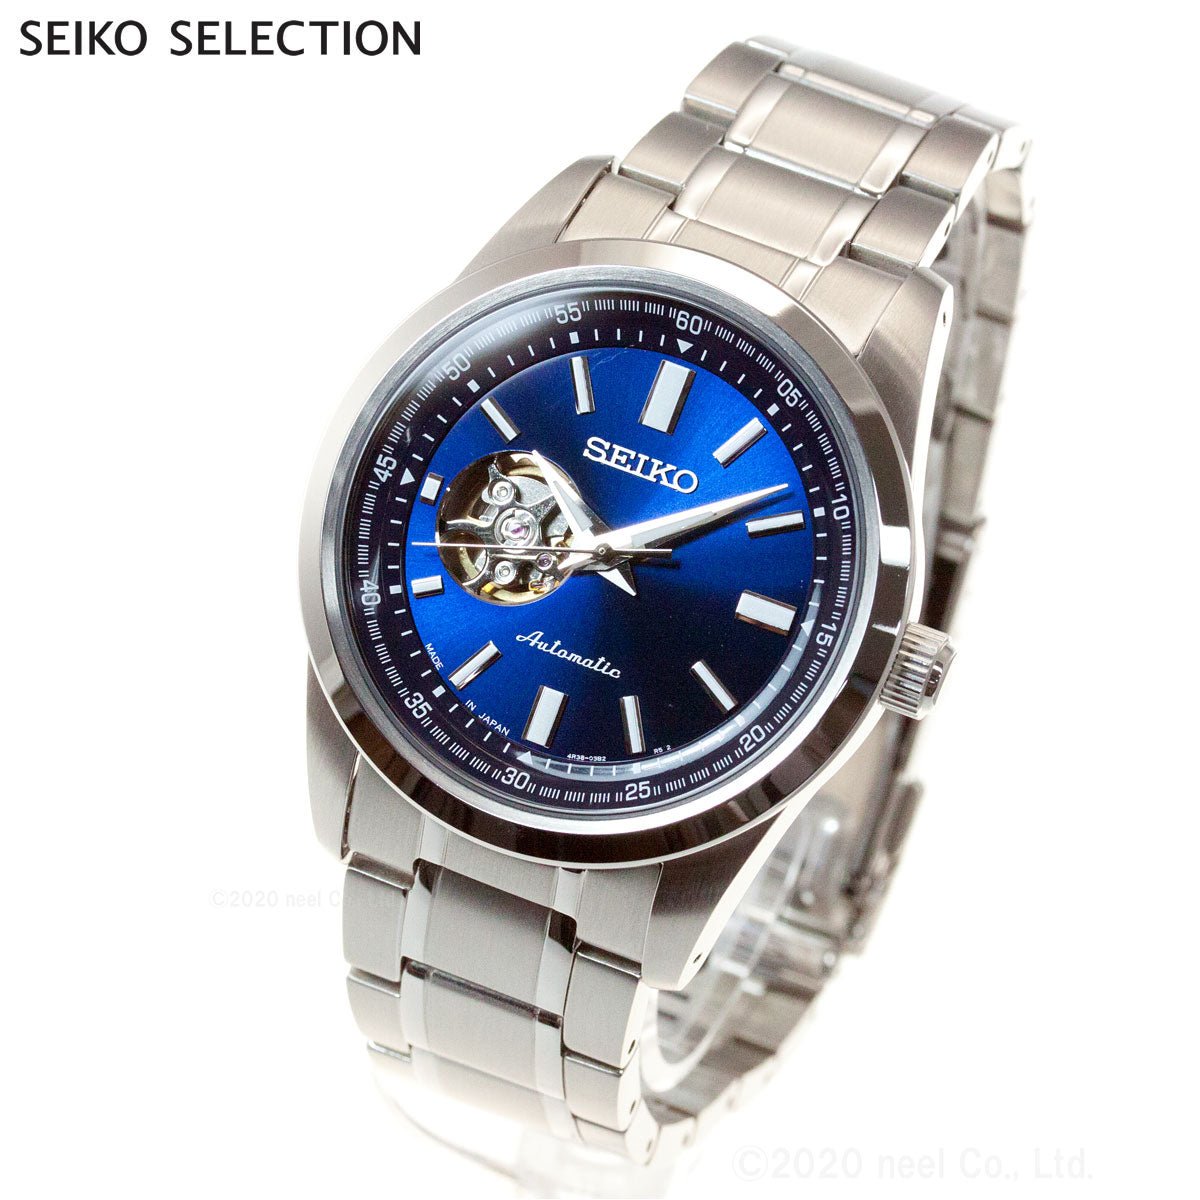 セイコー セレクション SEIKO SELECTION メカニカル 自動巻き 腕時計